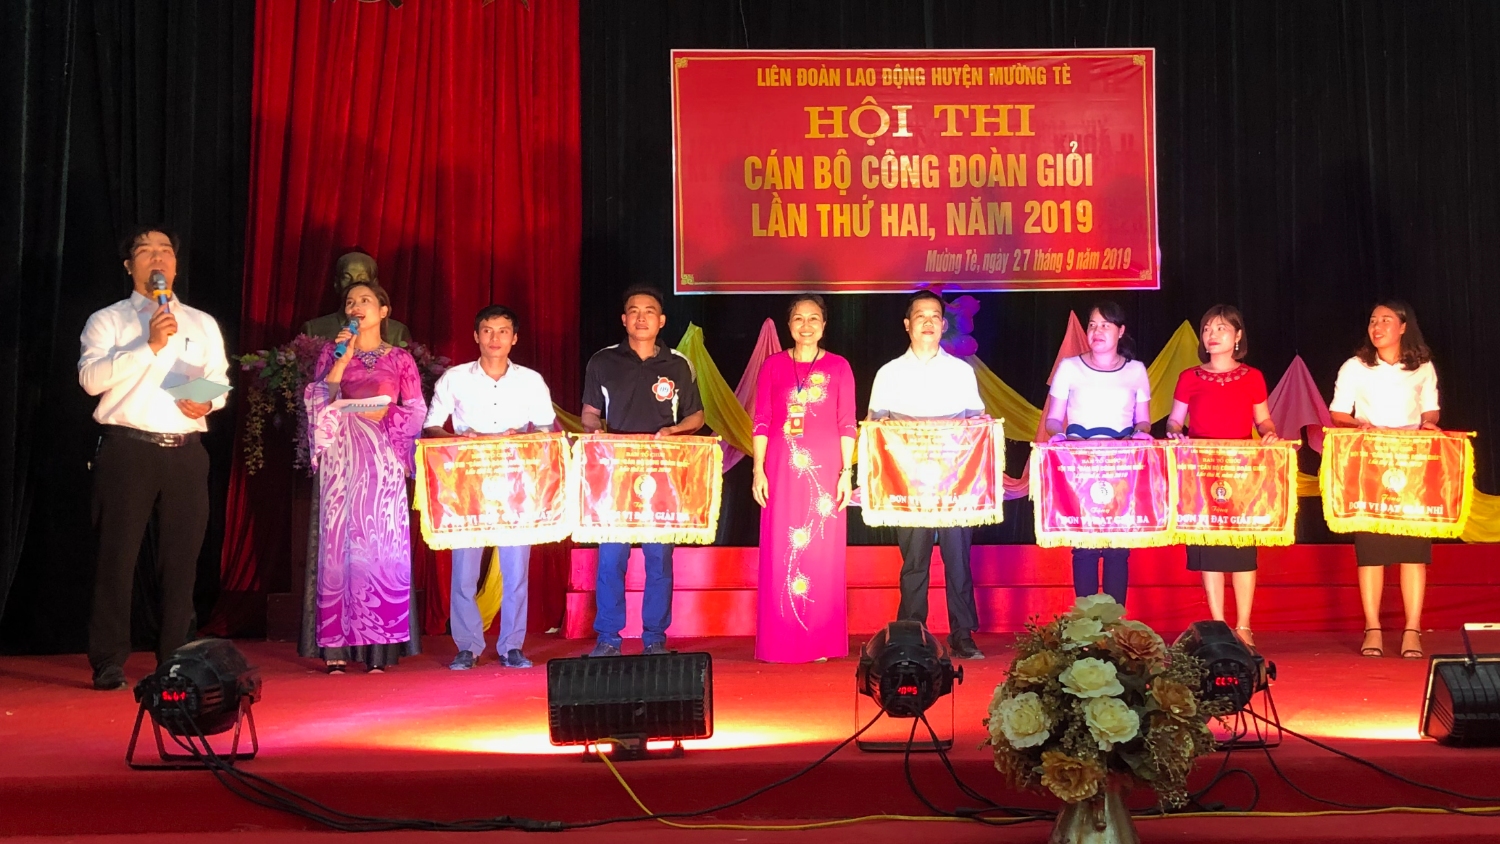 Đồng chí Nguyễn Thị Thúy - Trưởng Ban tổ chức Hội thi trao giải cho các đoàn đạt giải Nhất, Nhì, Ba toàn đoàn